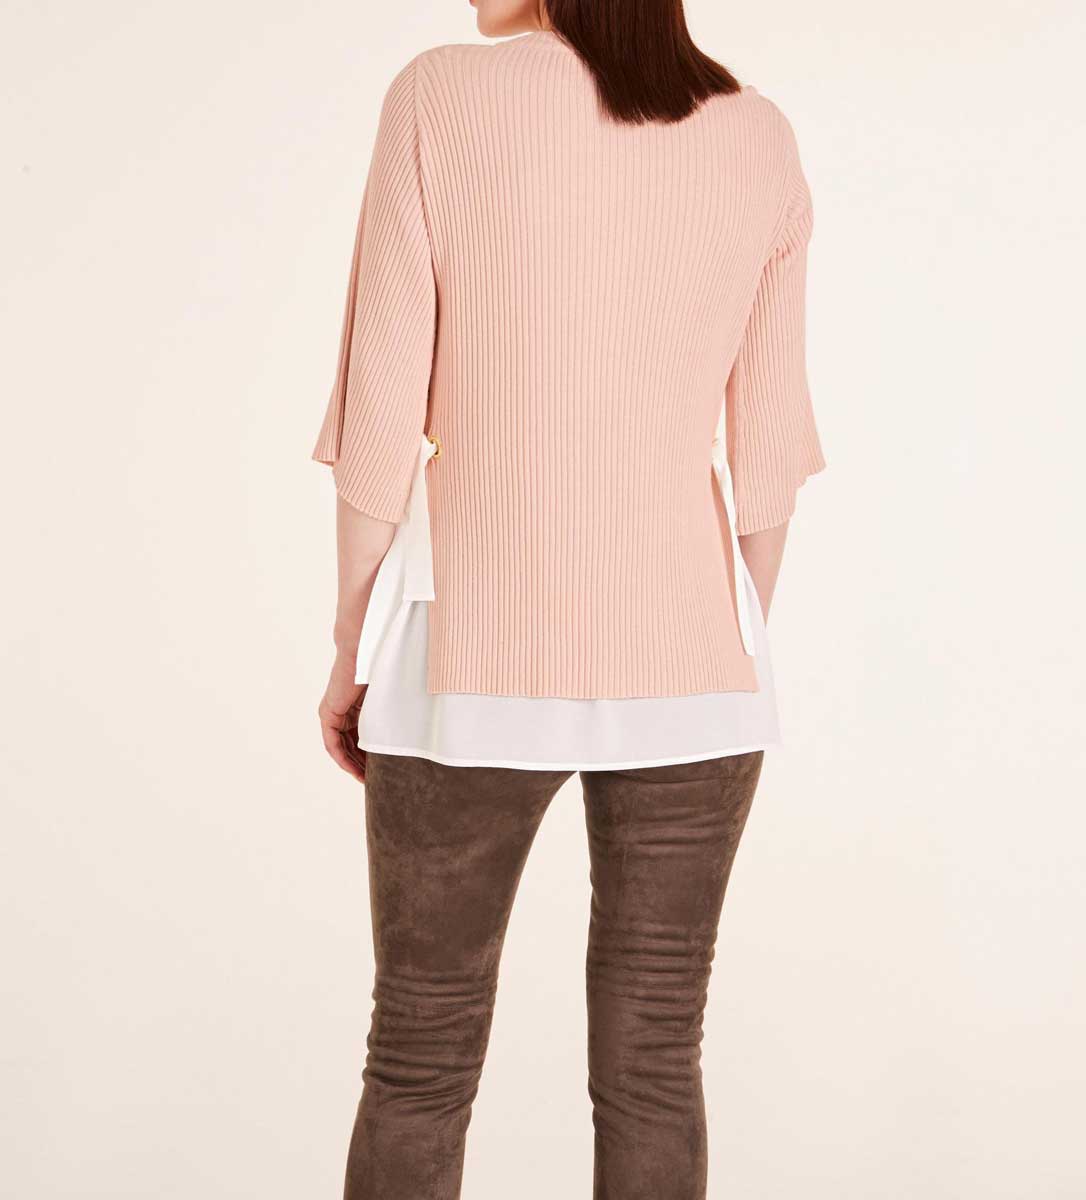 Ashley Brooke Damen Designer-Pullover-2-in-1, rosé-ecru